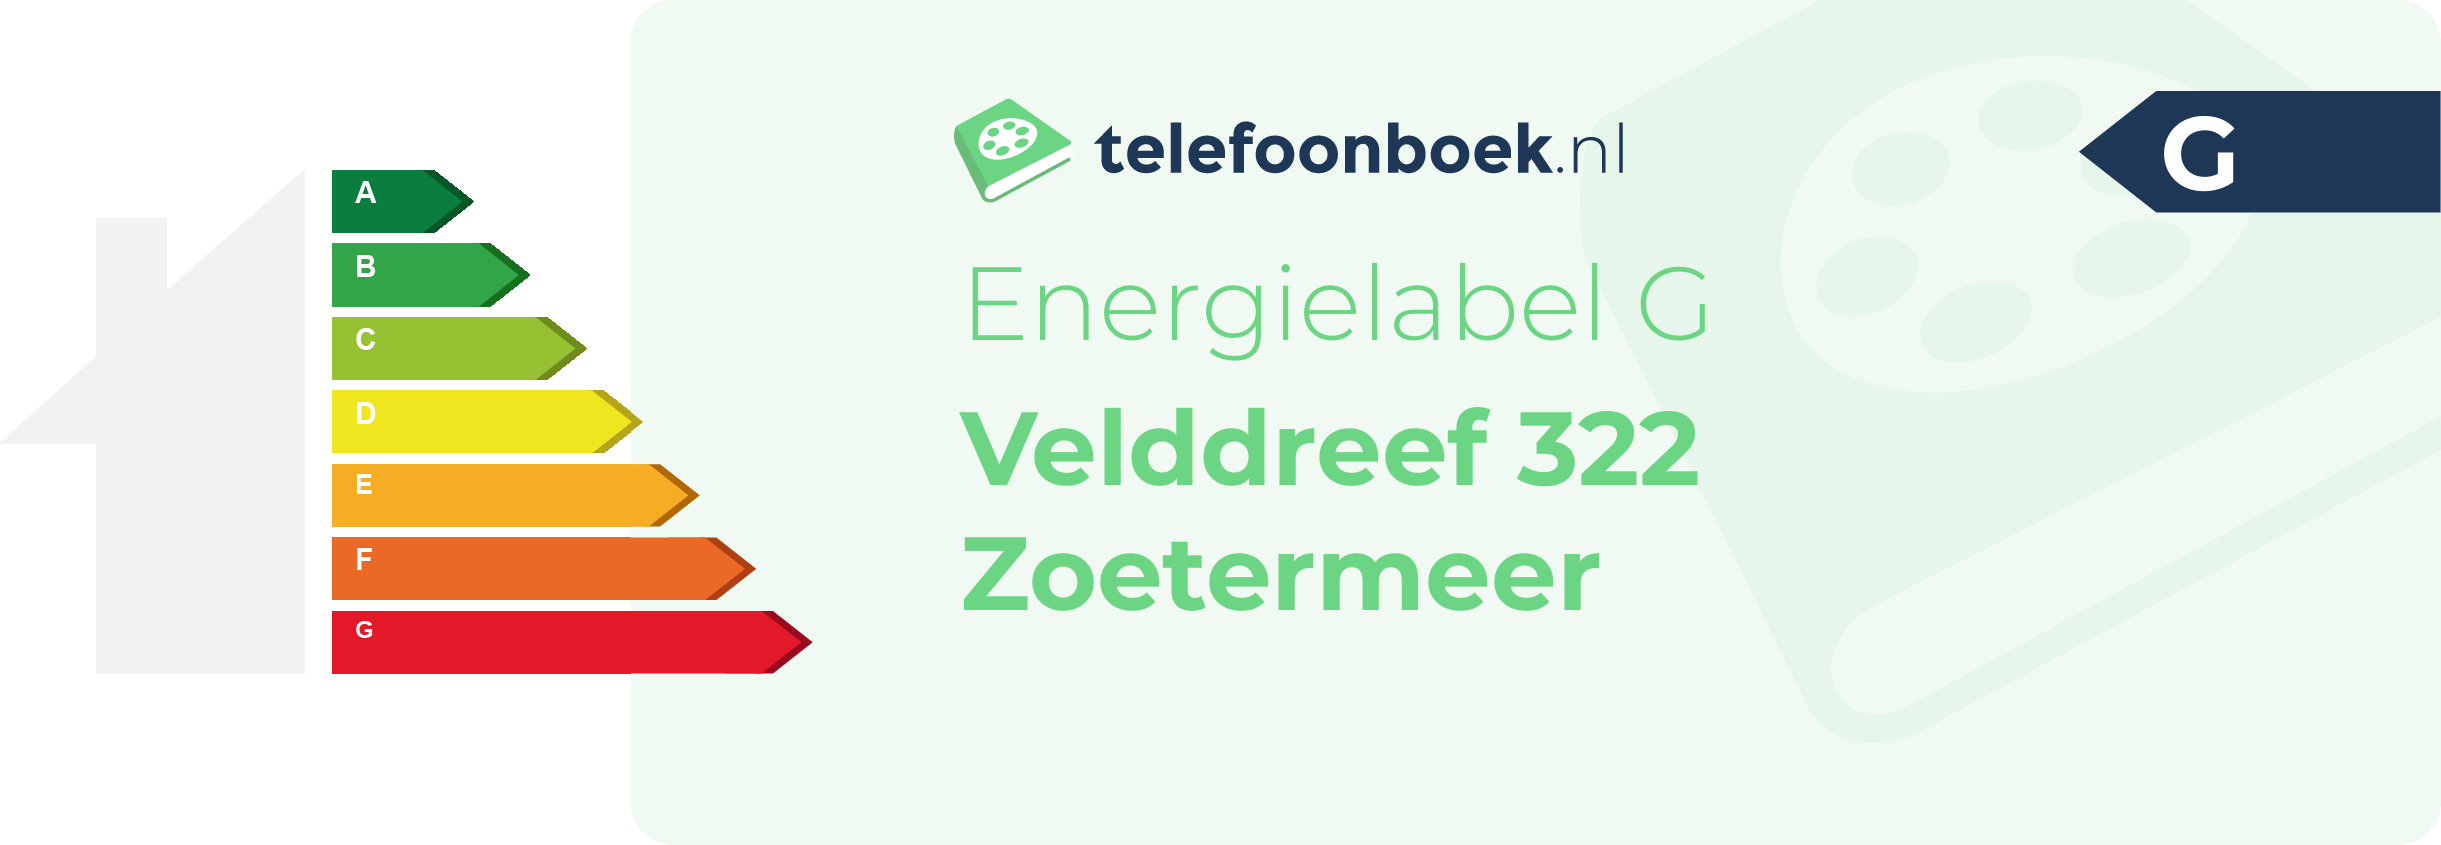 Energielabel Velddreef 322 Zoetermeer